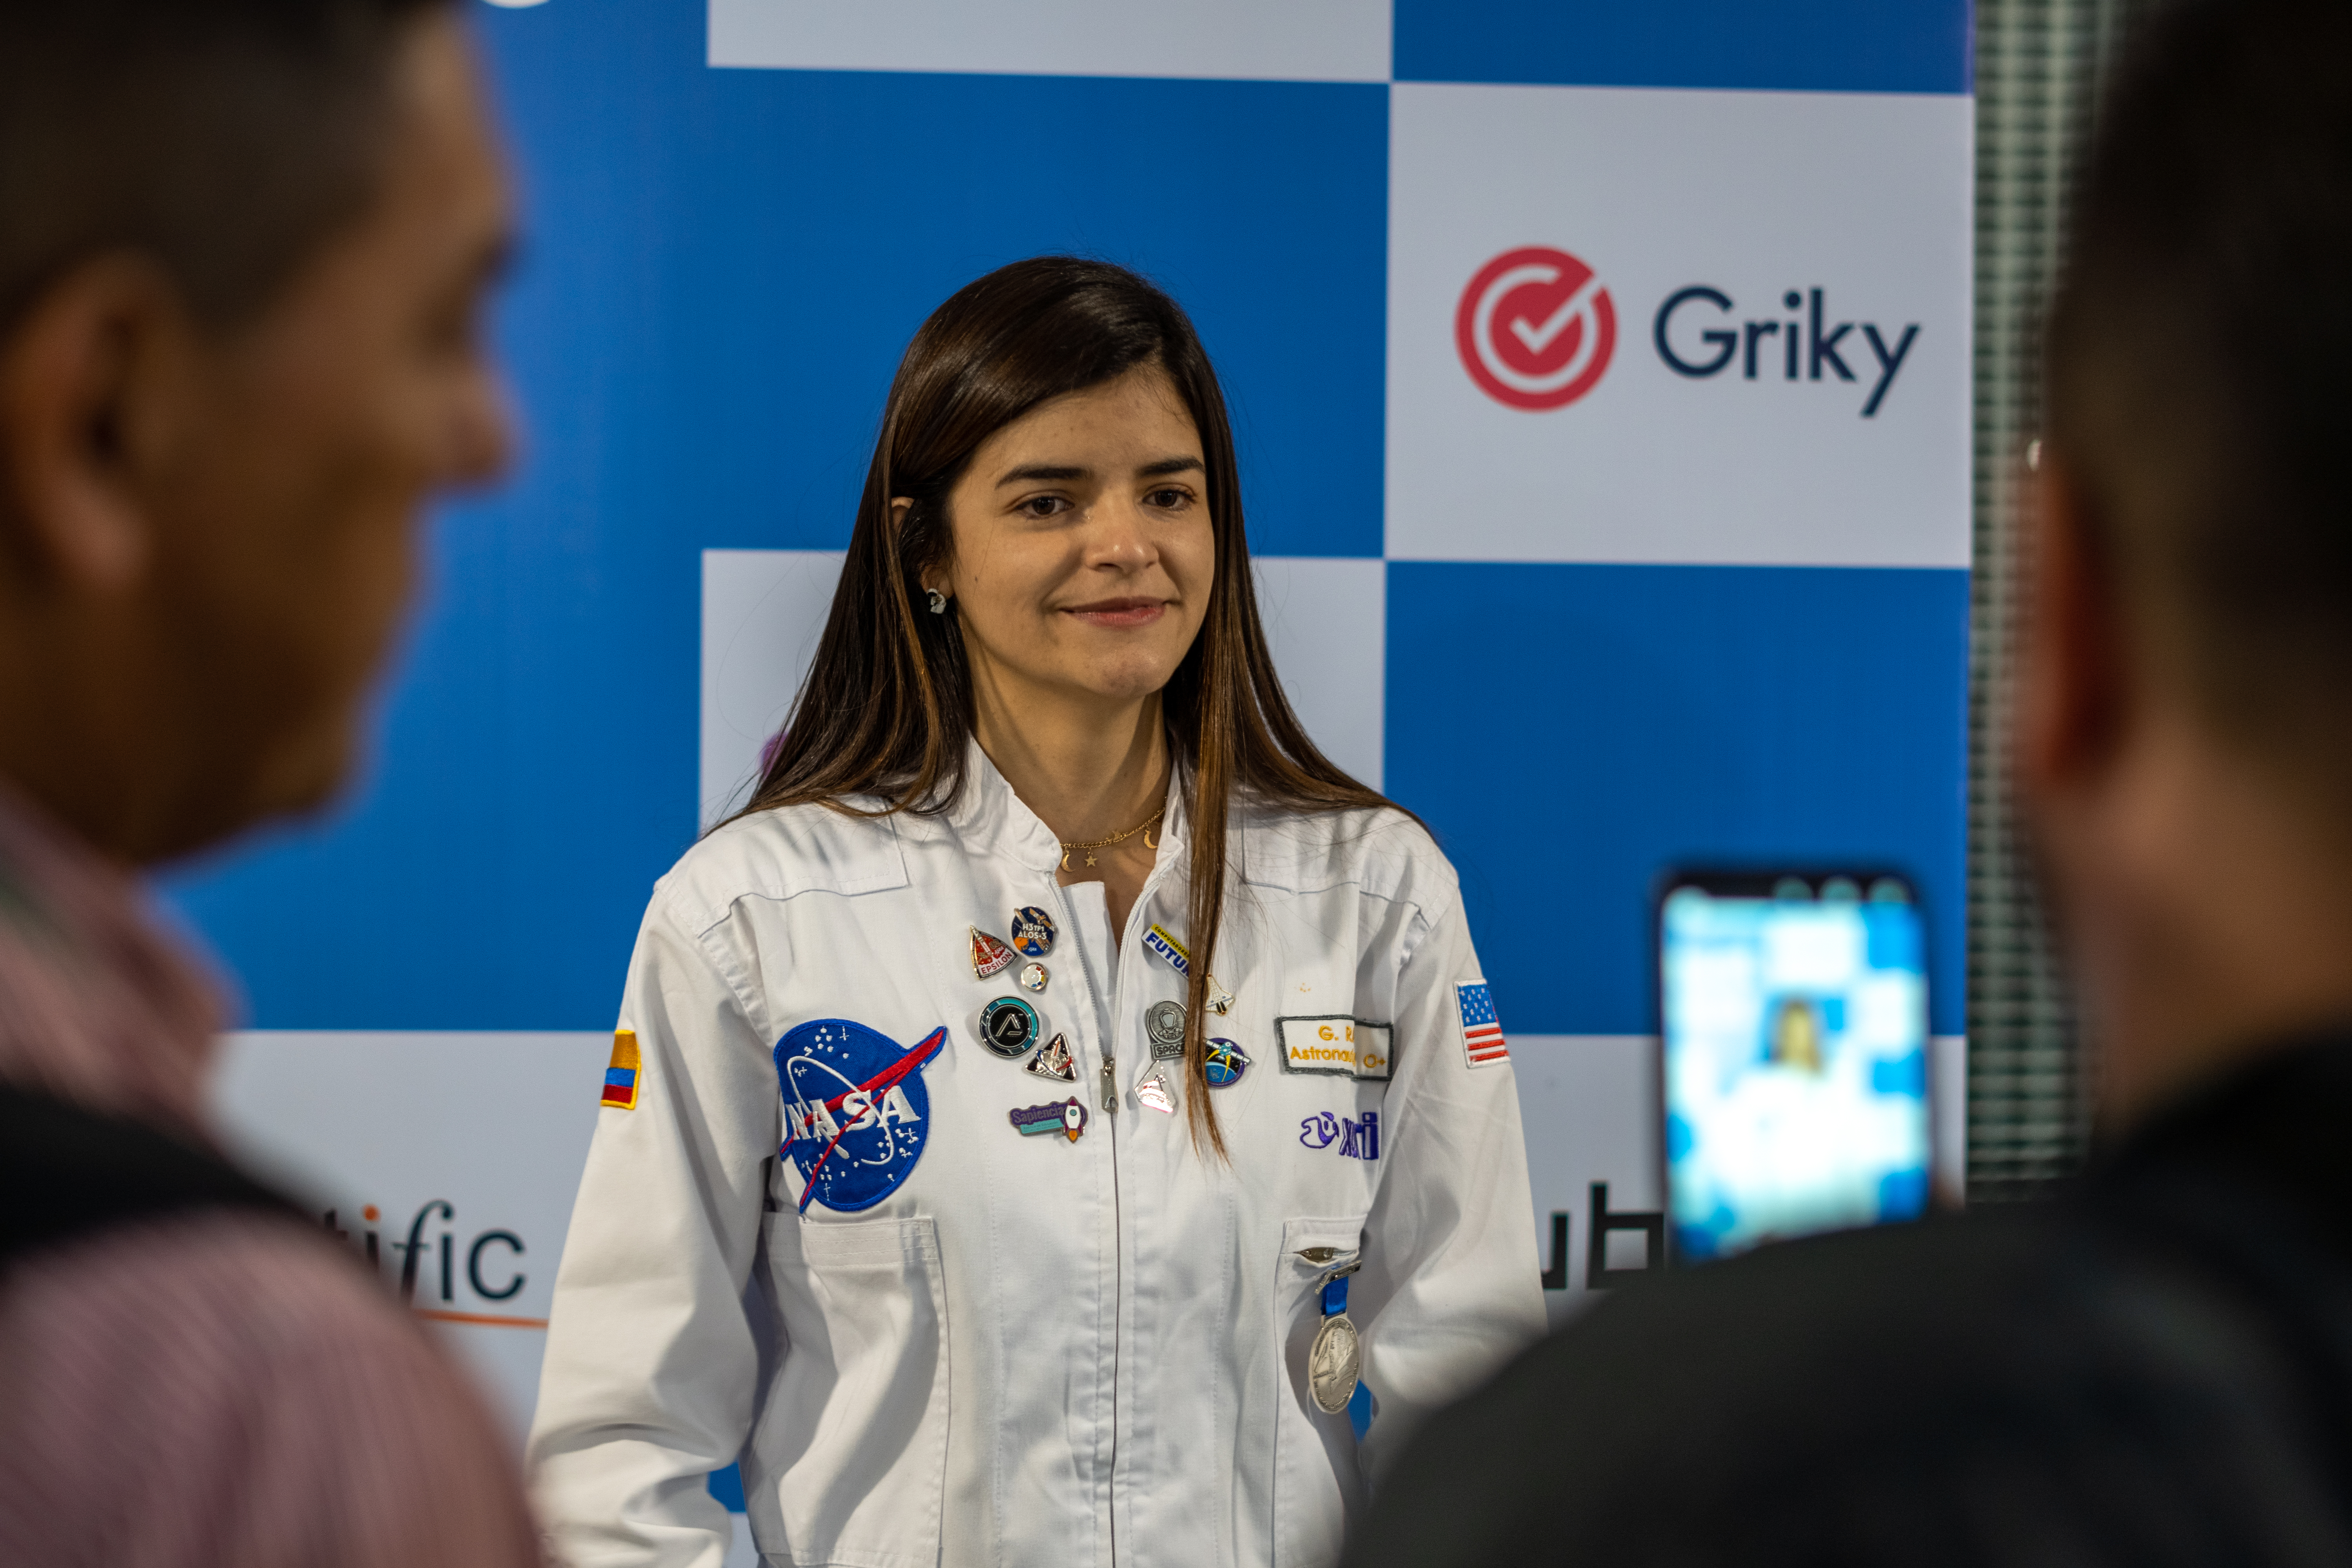 En la imagen, Giovanna Ramírez más conocida como la "astronauta análoga" colombiana